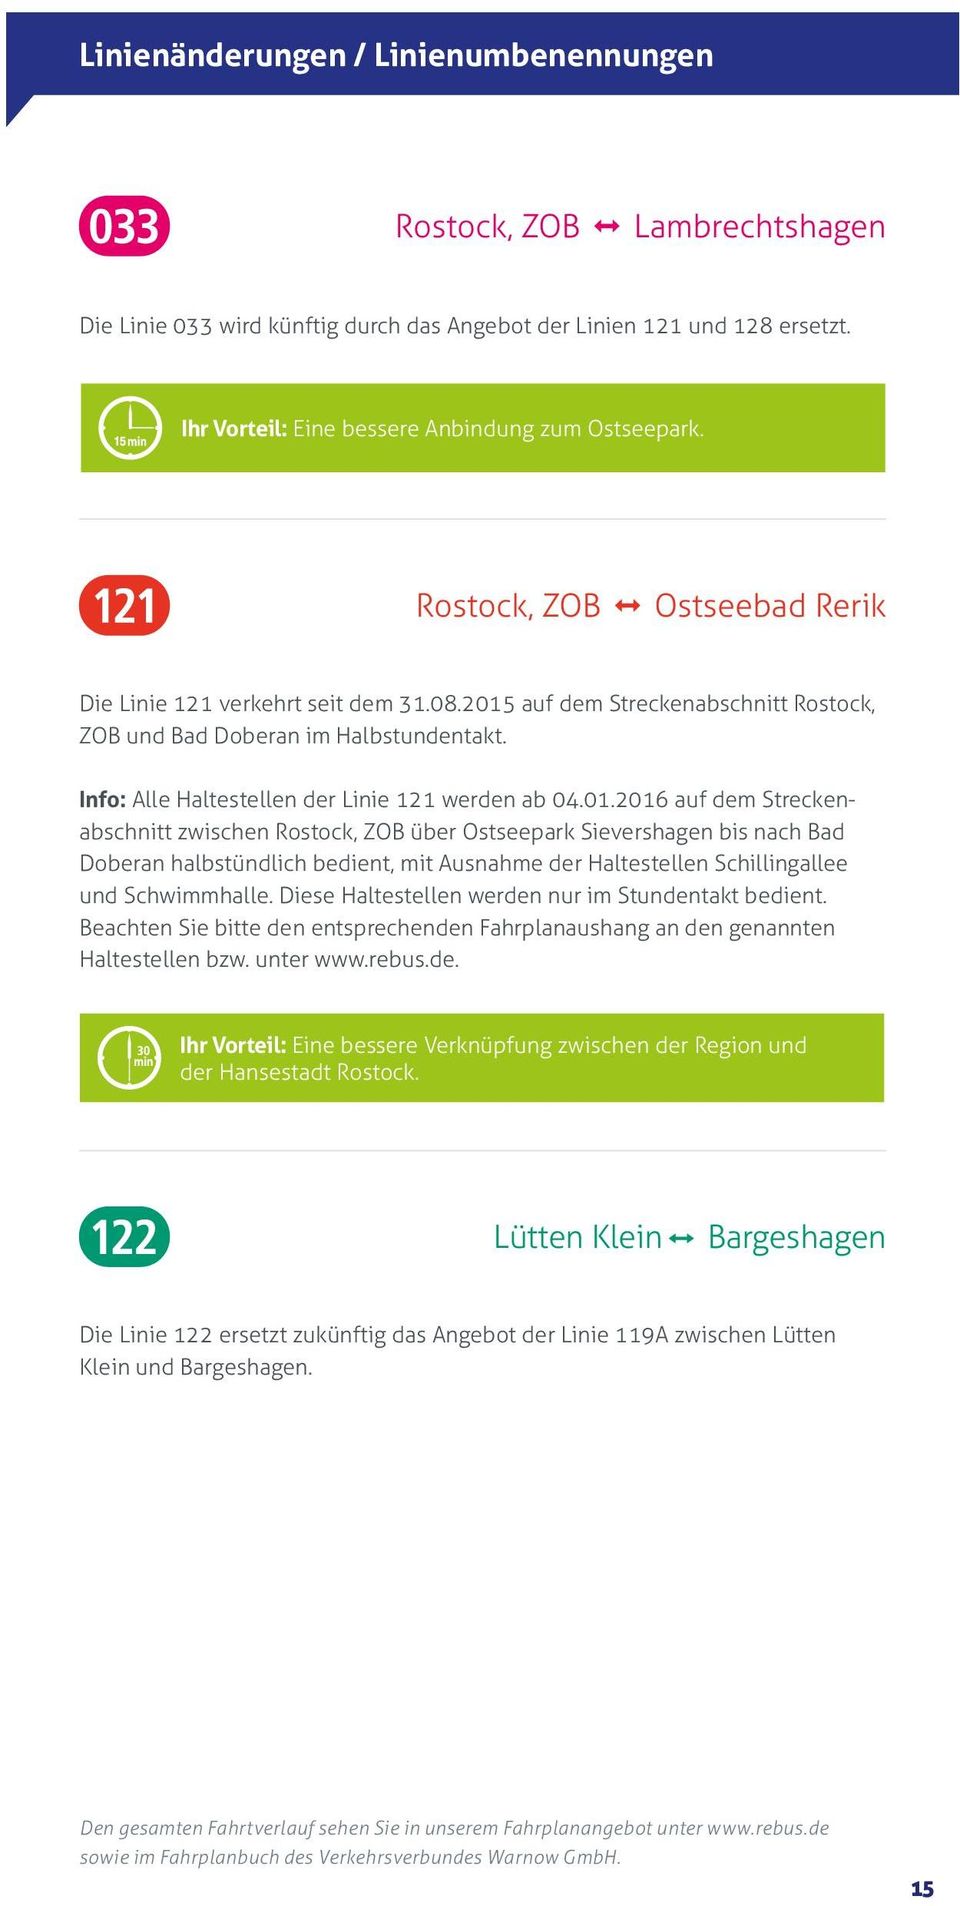 auf dem Streckenabschnitt Rostock, ZOB und Bad Doberan im Halbstundentakt. Info: Alle Haltestellen der Linie 121 werden ab 04.01.